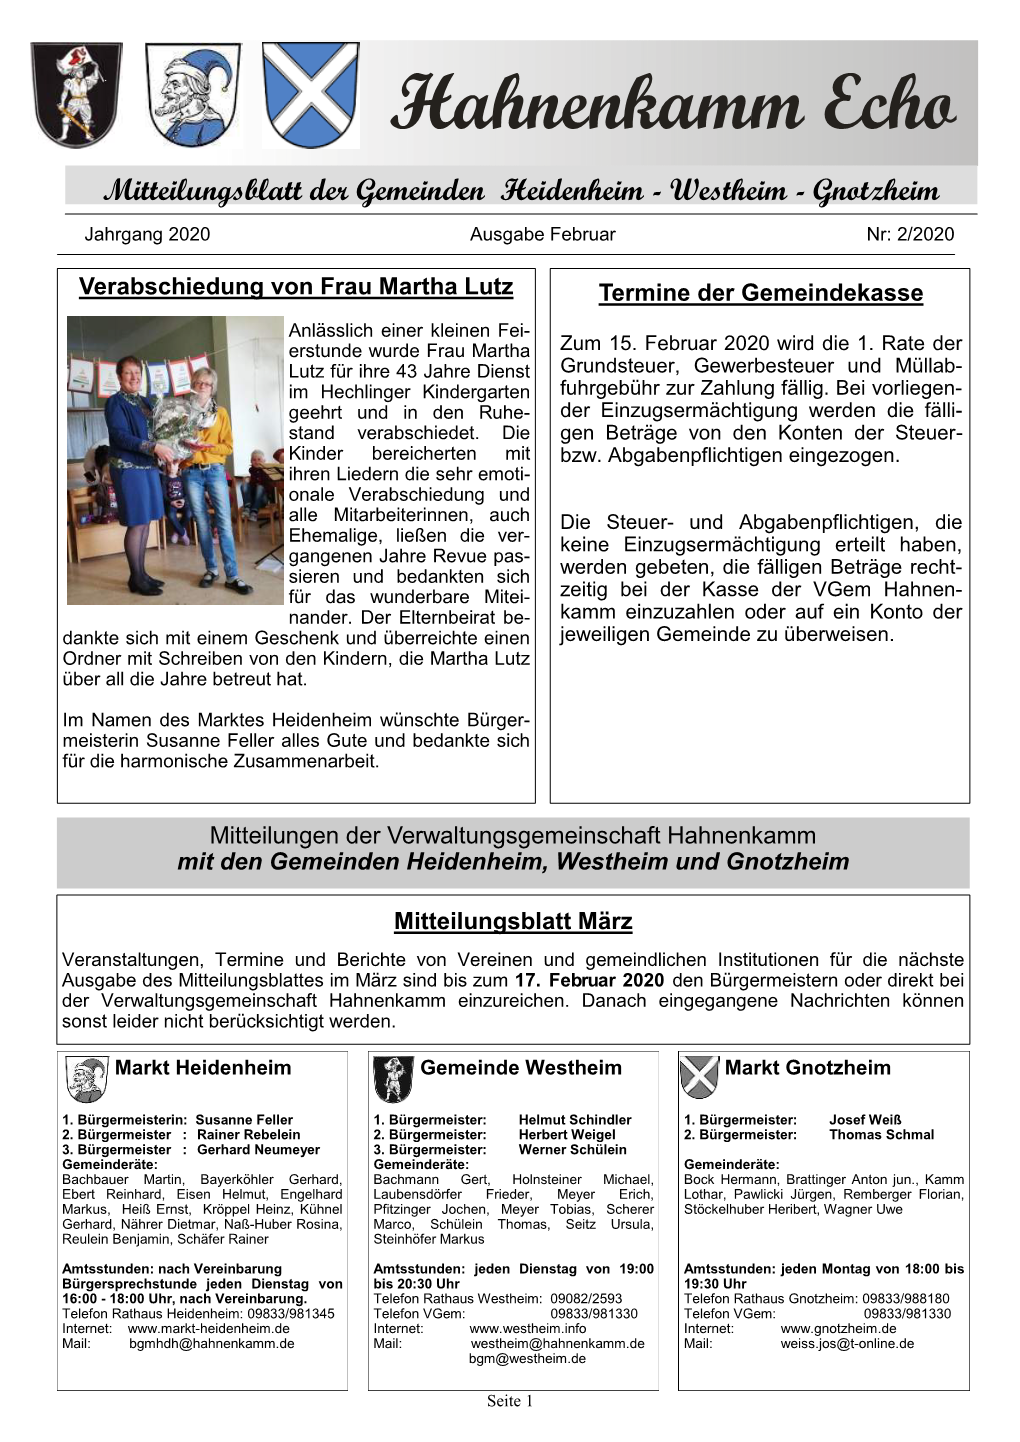 Hahnenkamm Echo Mitteilungsblatt Der Gemeinden Heidenheim - Westheim - Gnotzheim Jahrgang 2020 Ausgabe Februar Nr: 2/2020